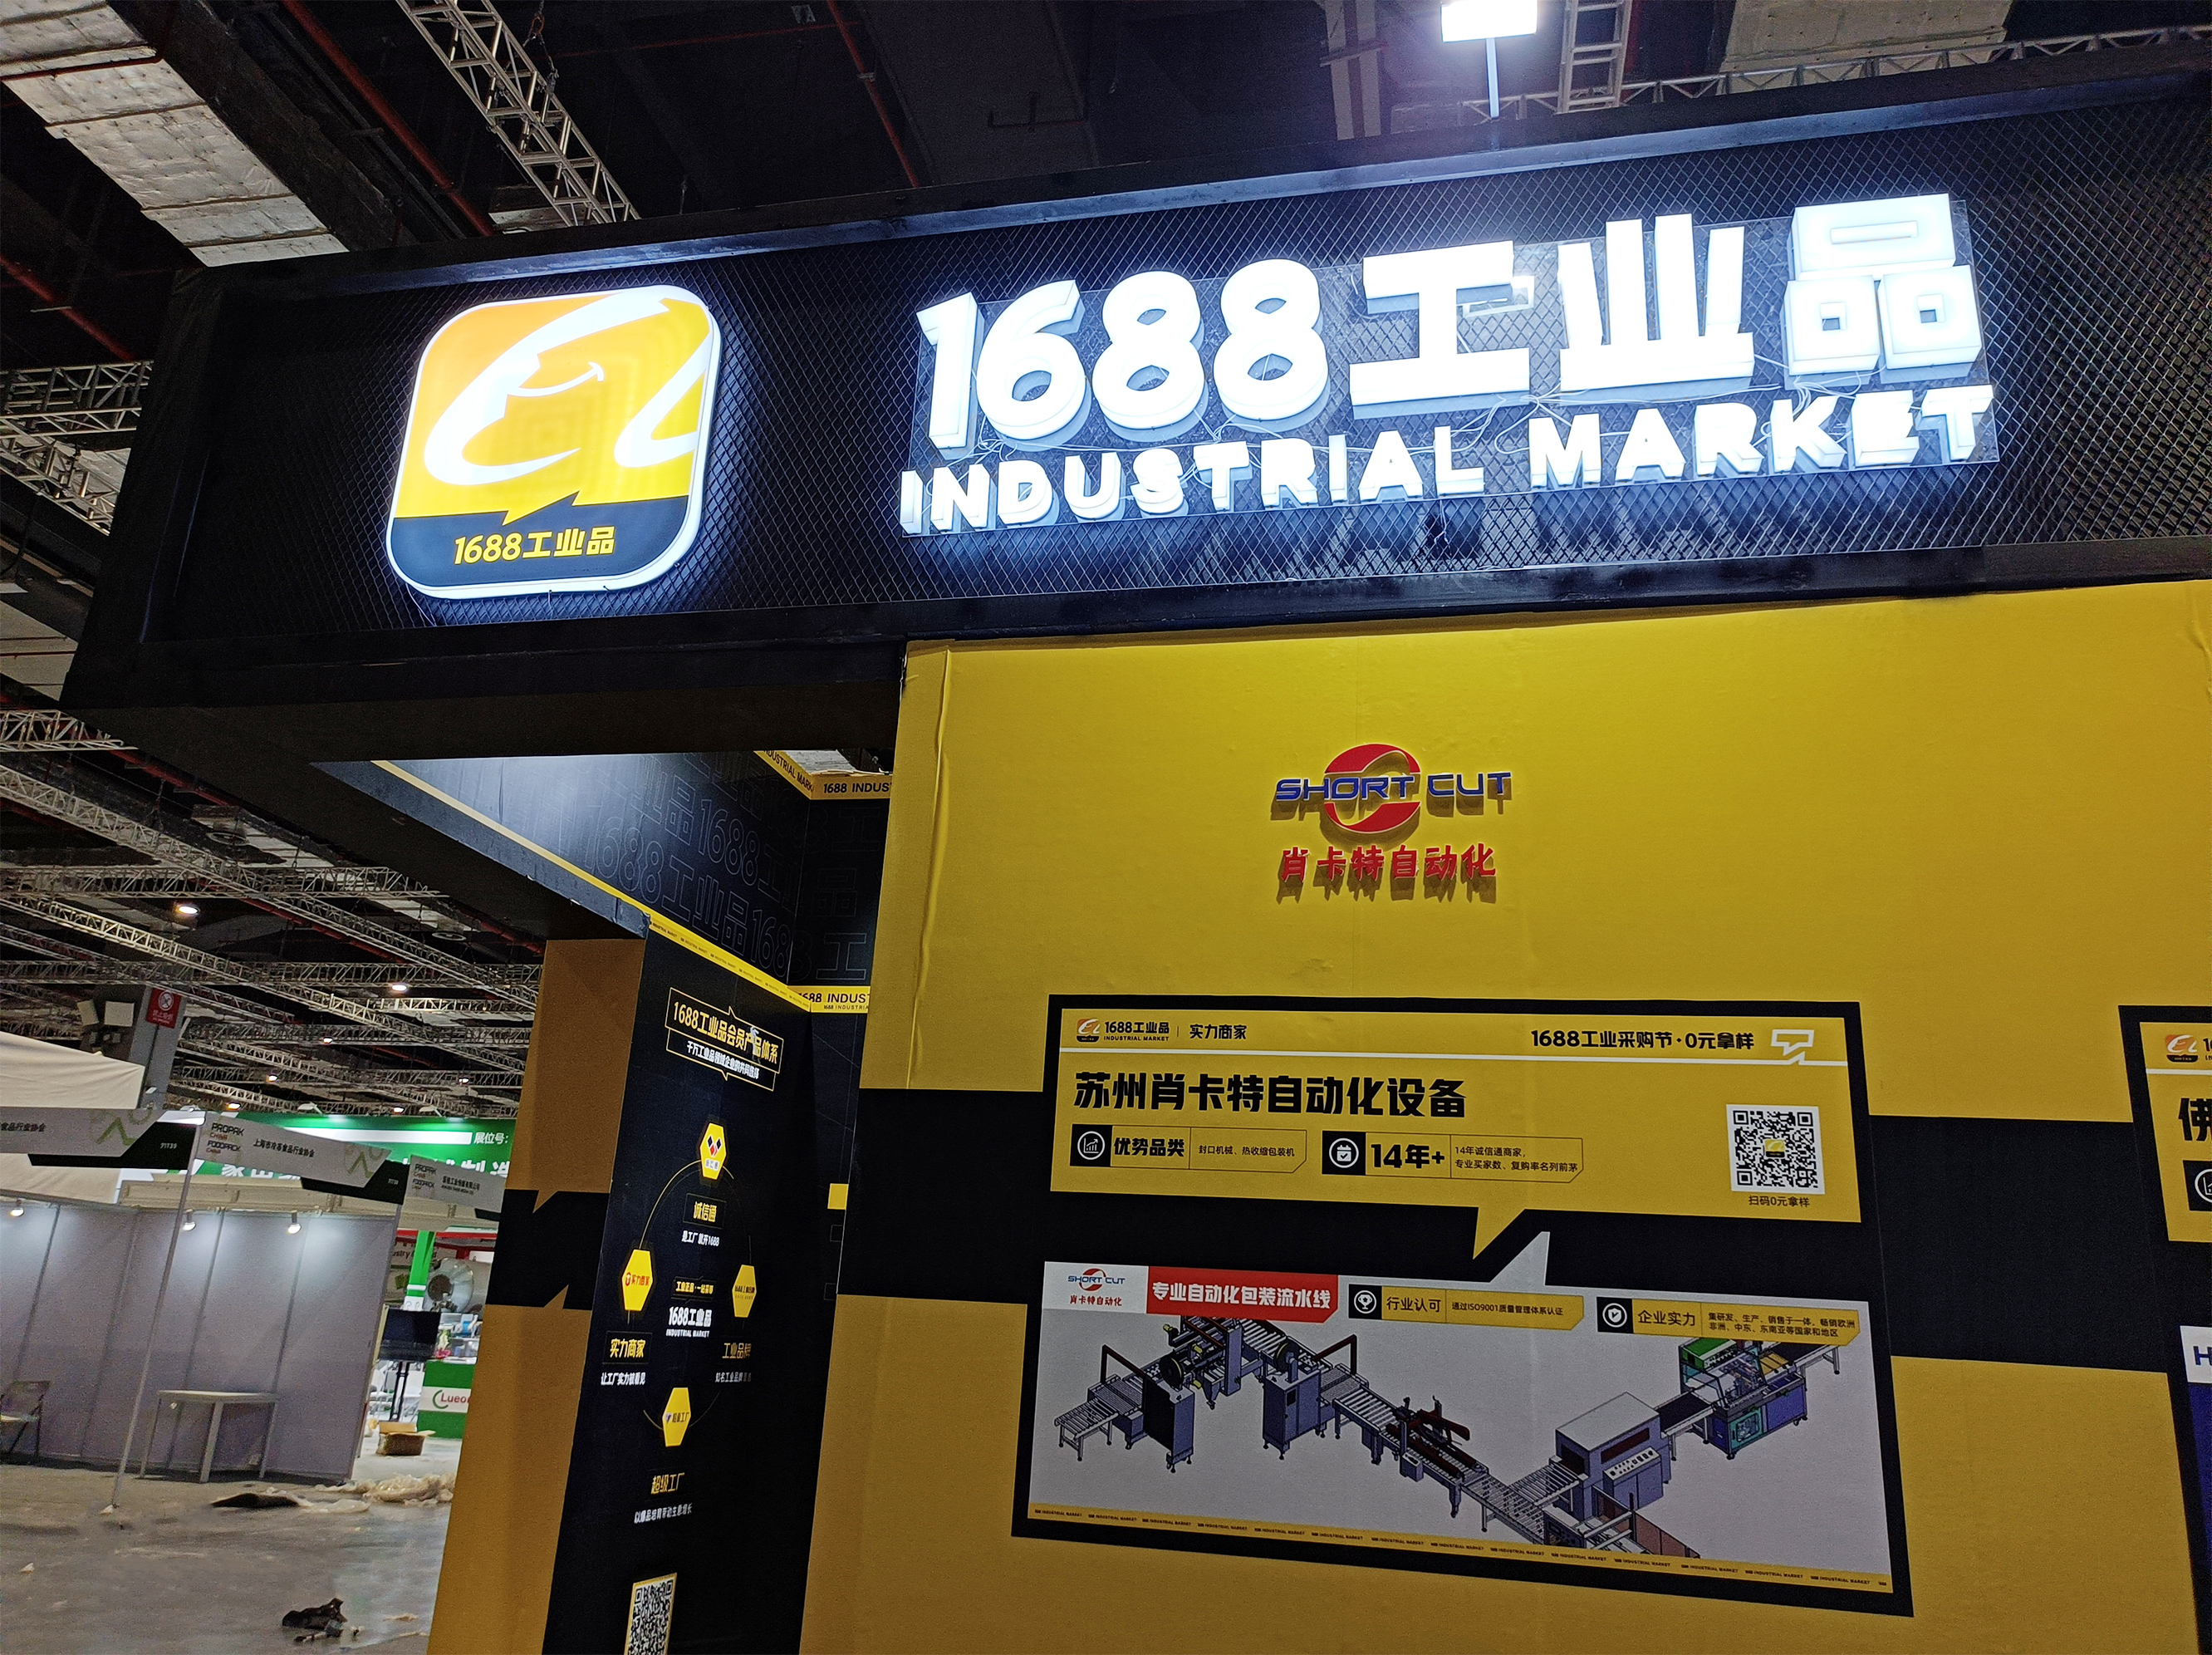 蘇州錢柜777自動化設備有限公司參加2021年上海包裝機械展會